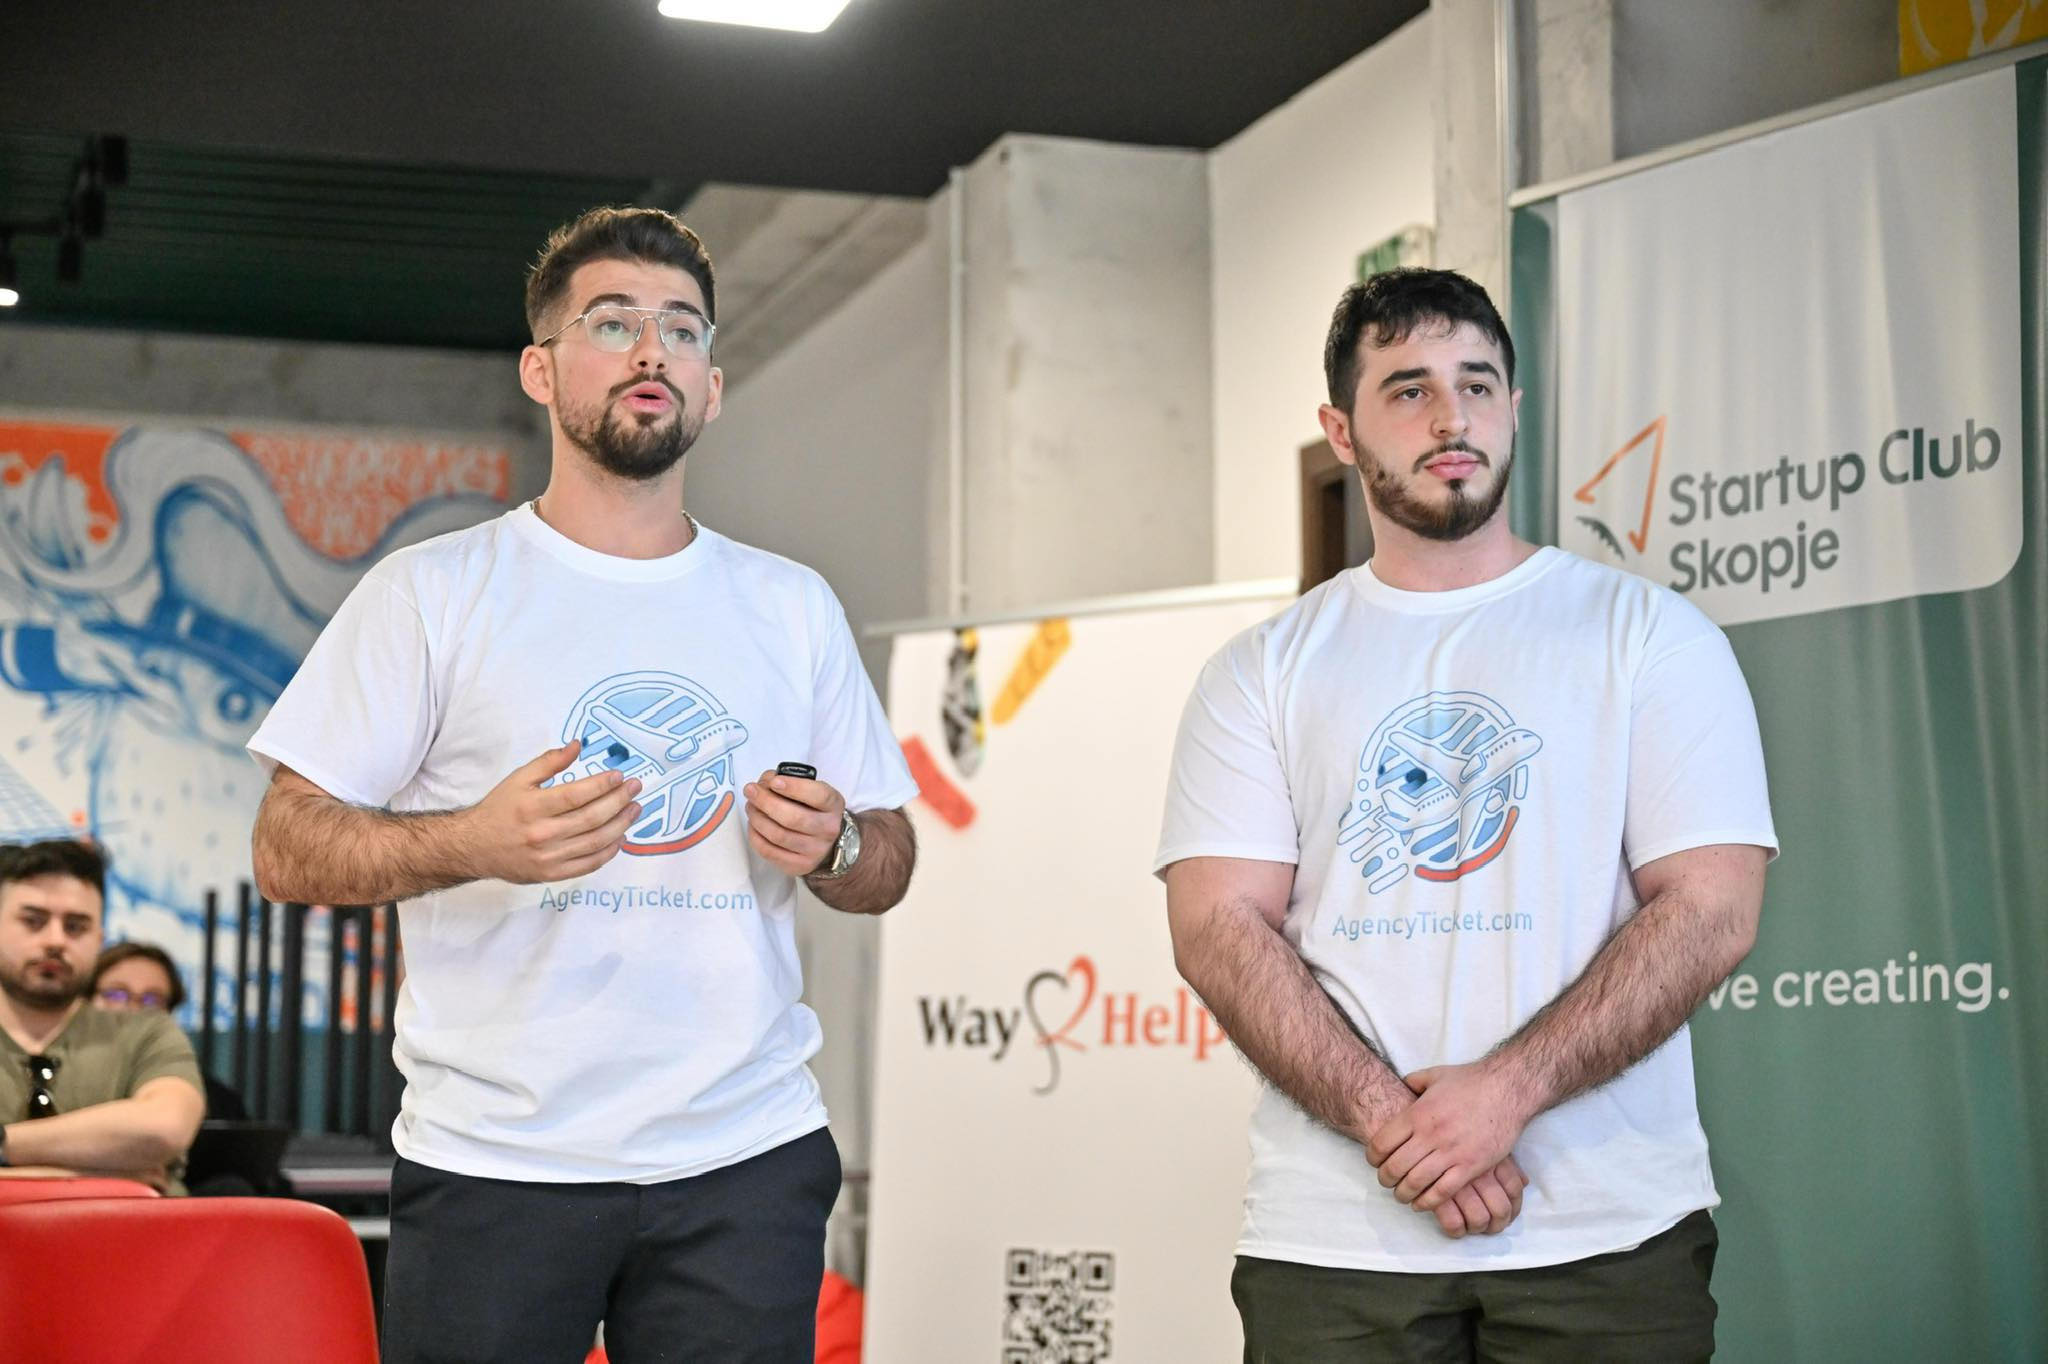 Gostivarlı Türk gençlerin kurduğu platform ülkedeki en başarılı “startup” seçildi